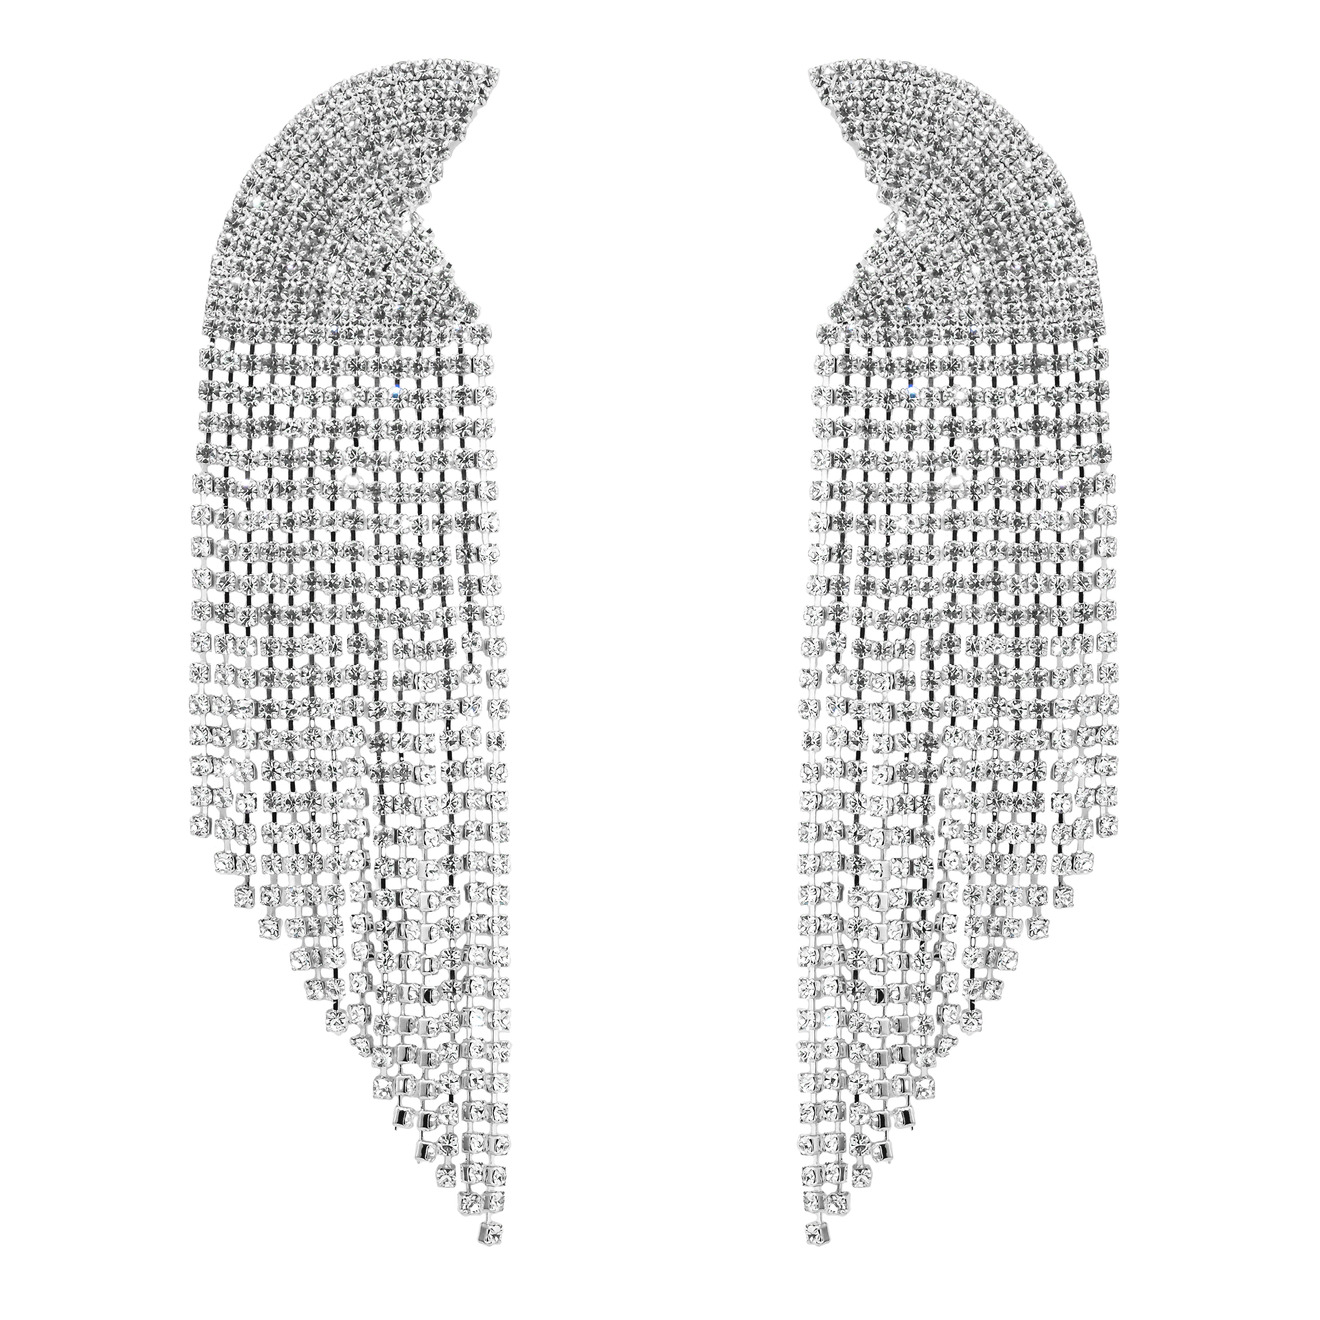 Herald Percy Серебристые серьги-полукруги с кристаллами herald percy серебристые серьги стрелки с кристаллами